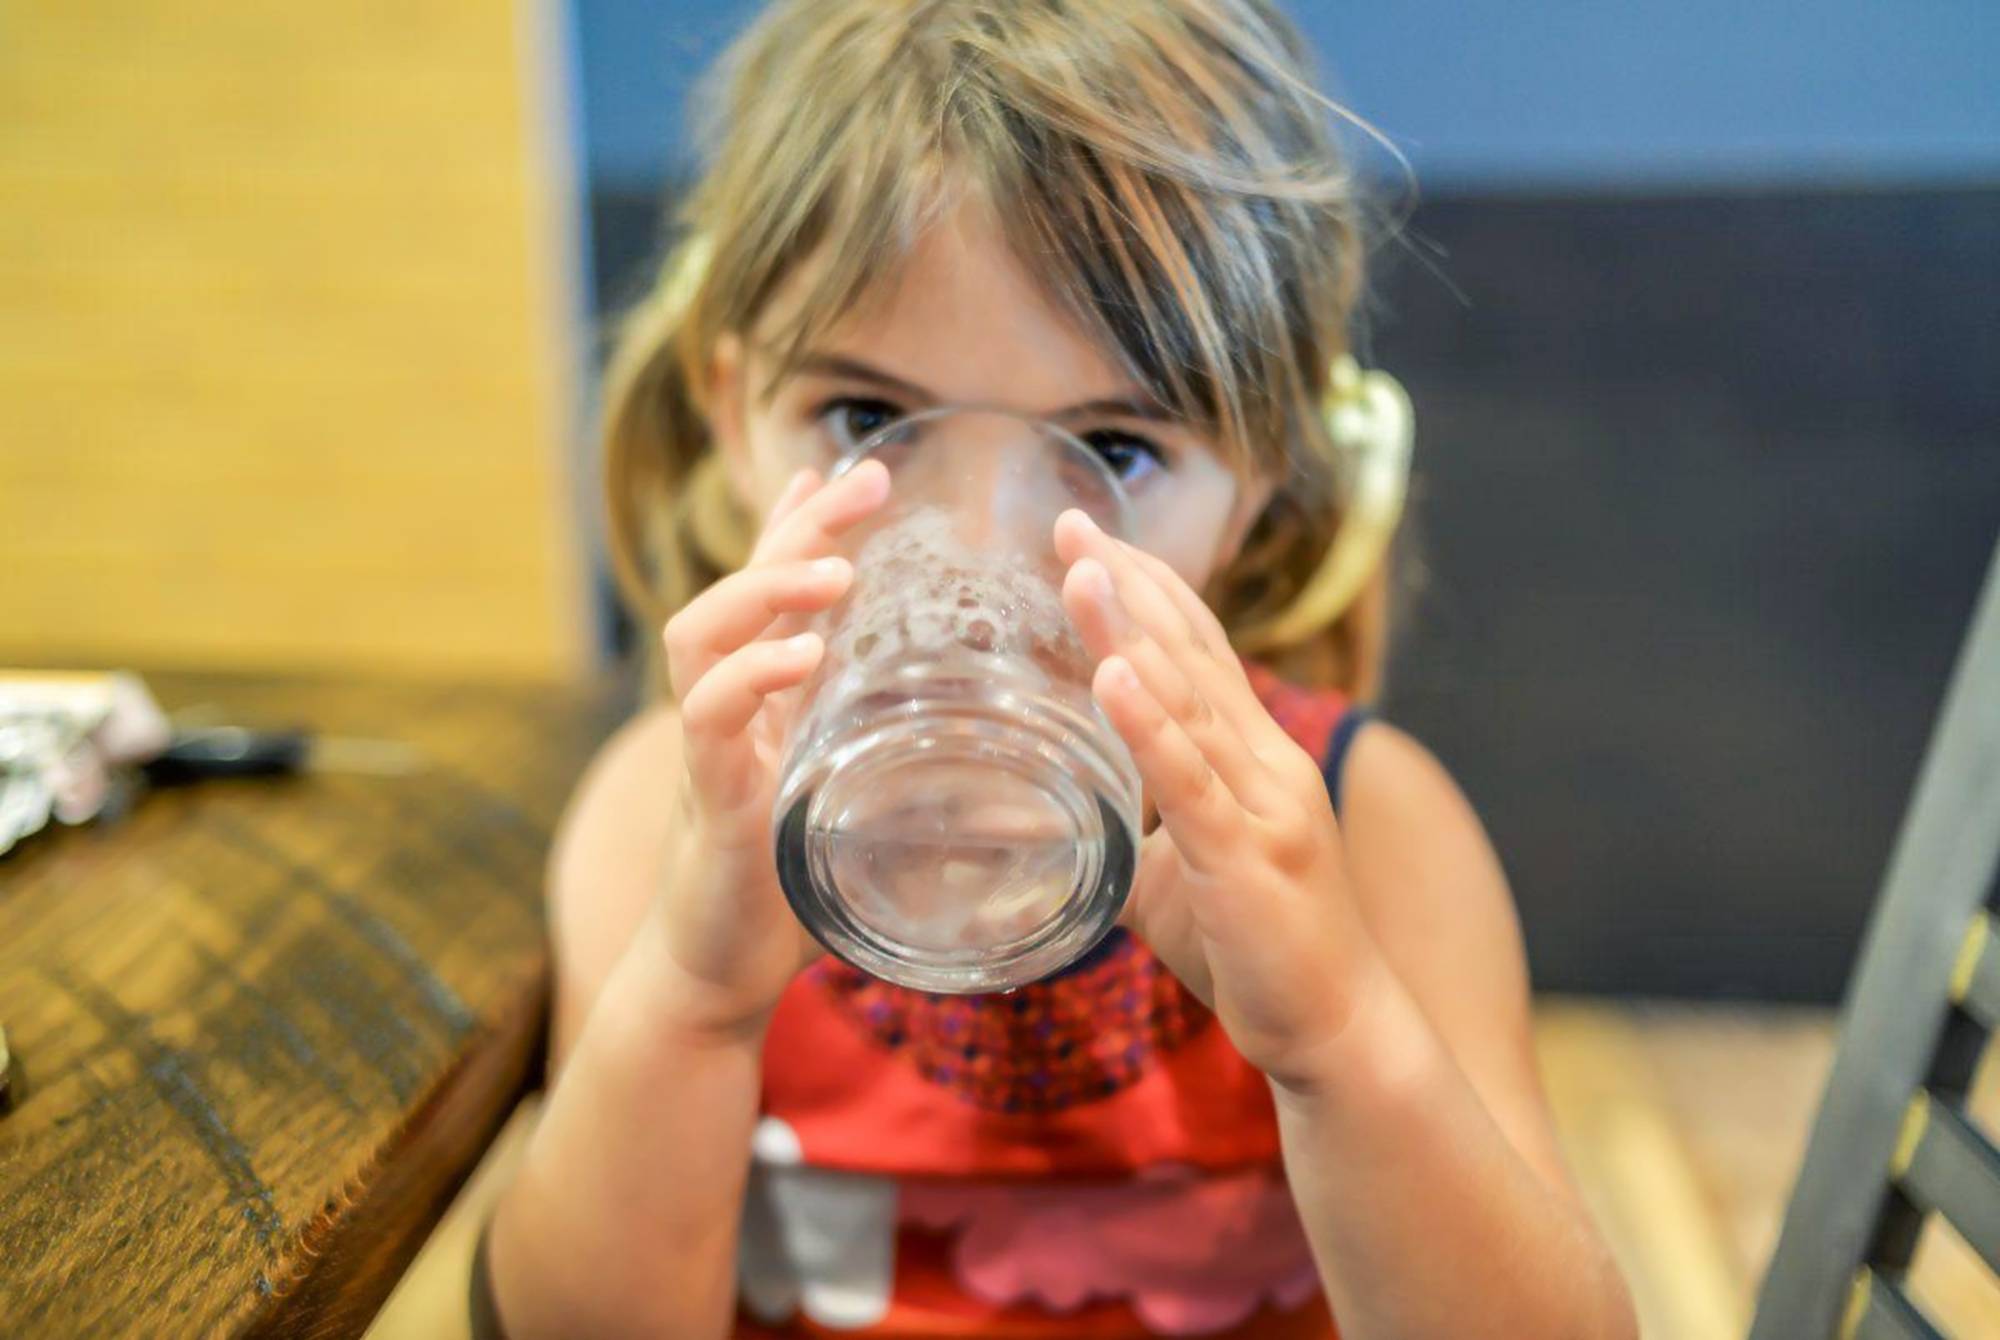 年龄较大的宝宝可用普通水杯喝水